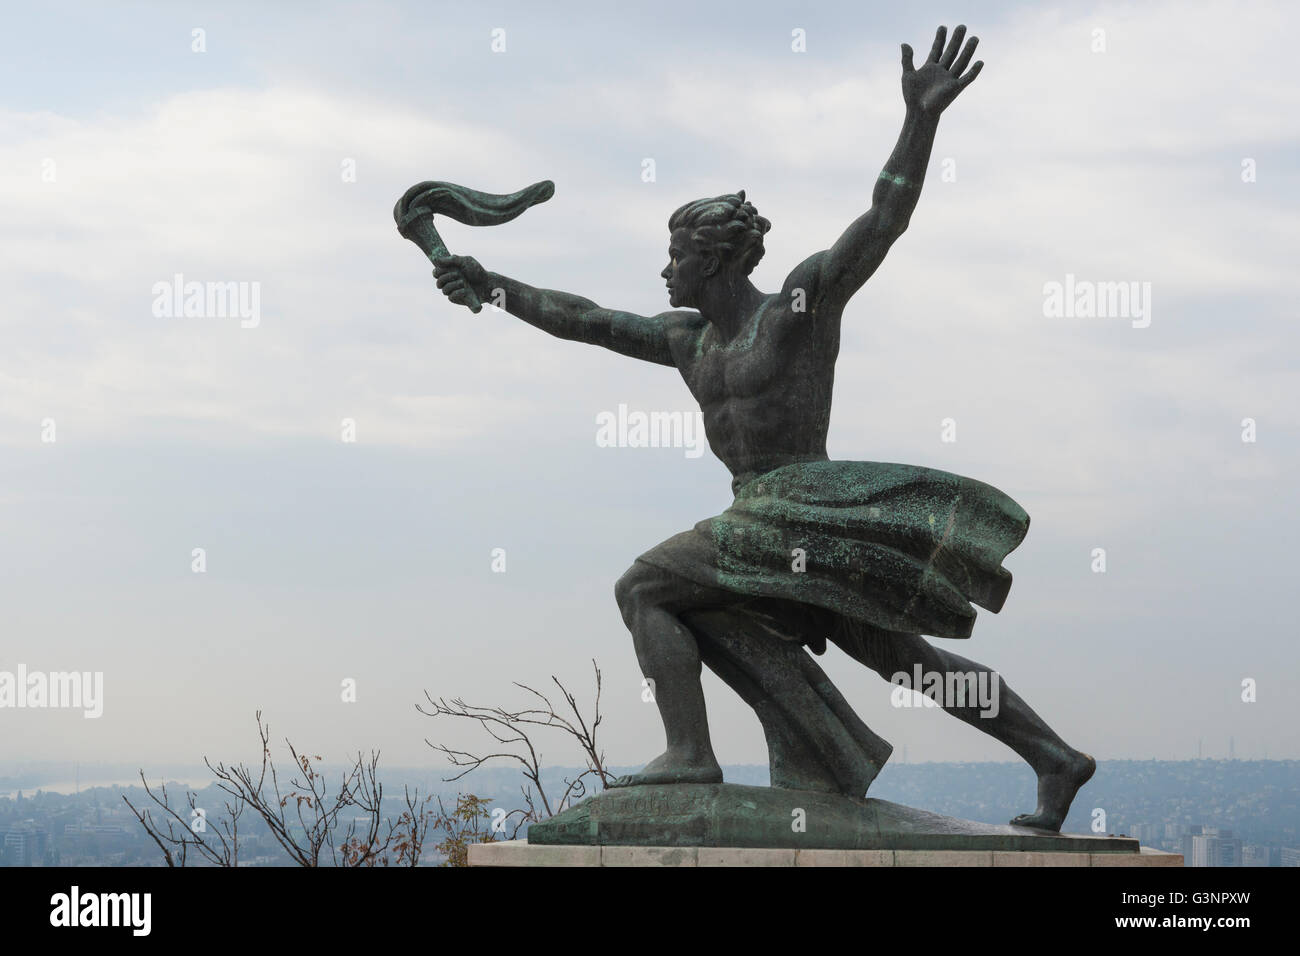 Il monumento della liberazione è stato originariamente progettato per celebrare il comunismo, Citadel, Budapest, Ungheria Foto Stock